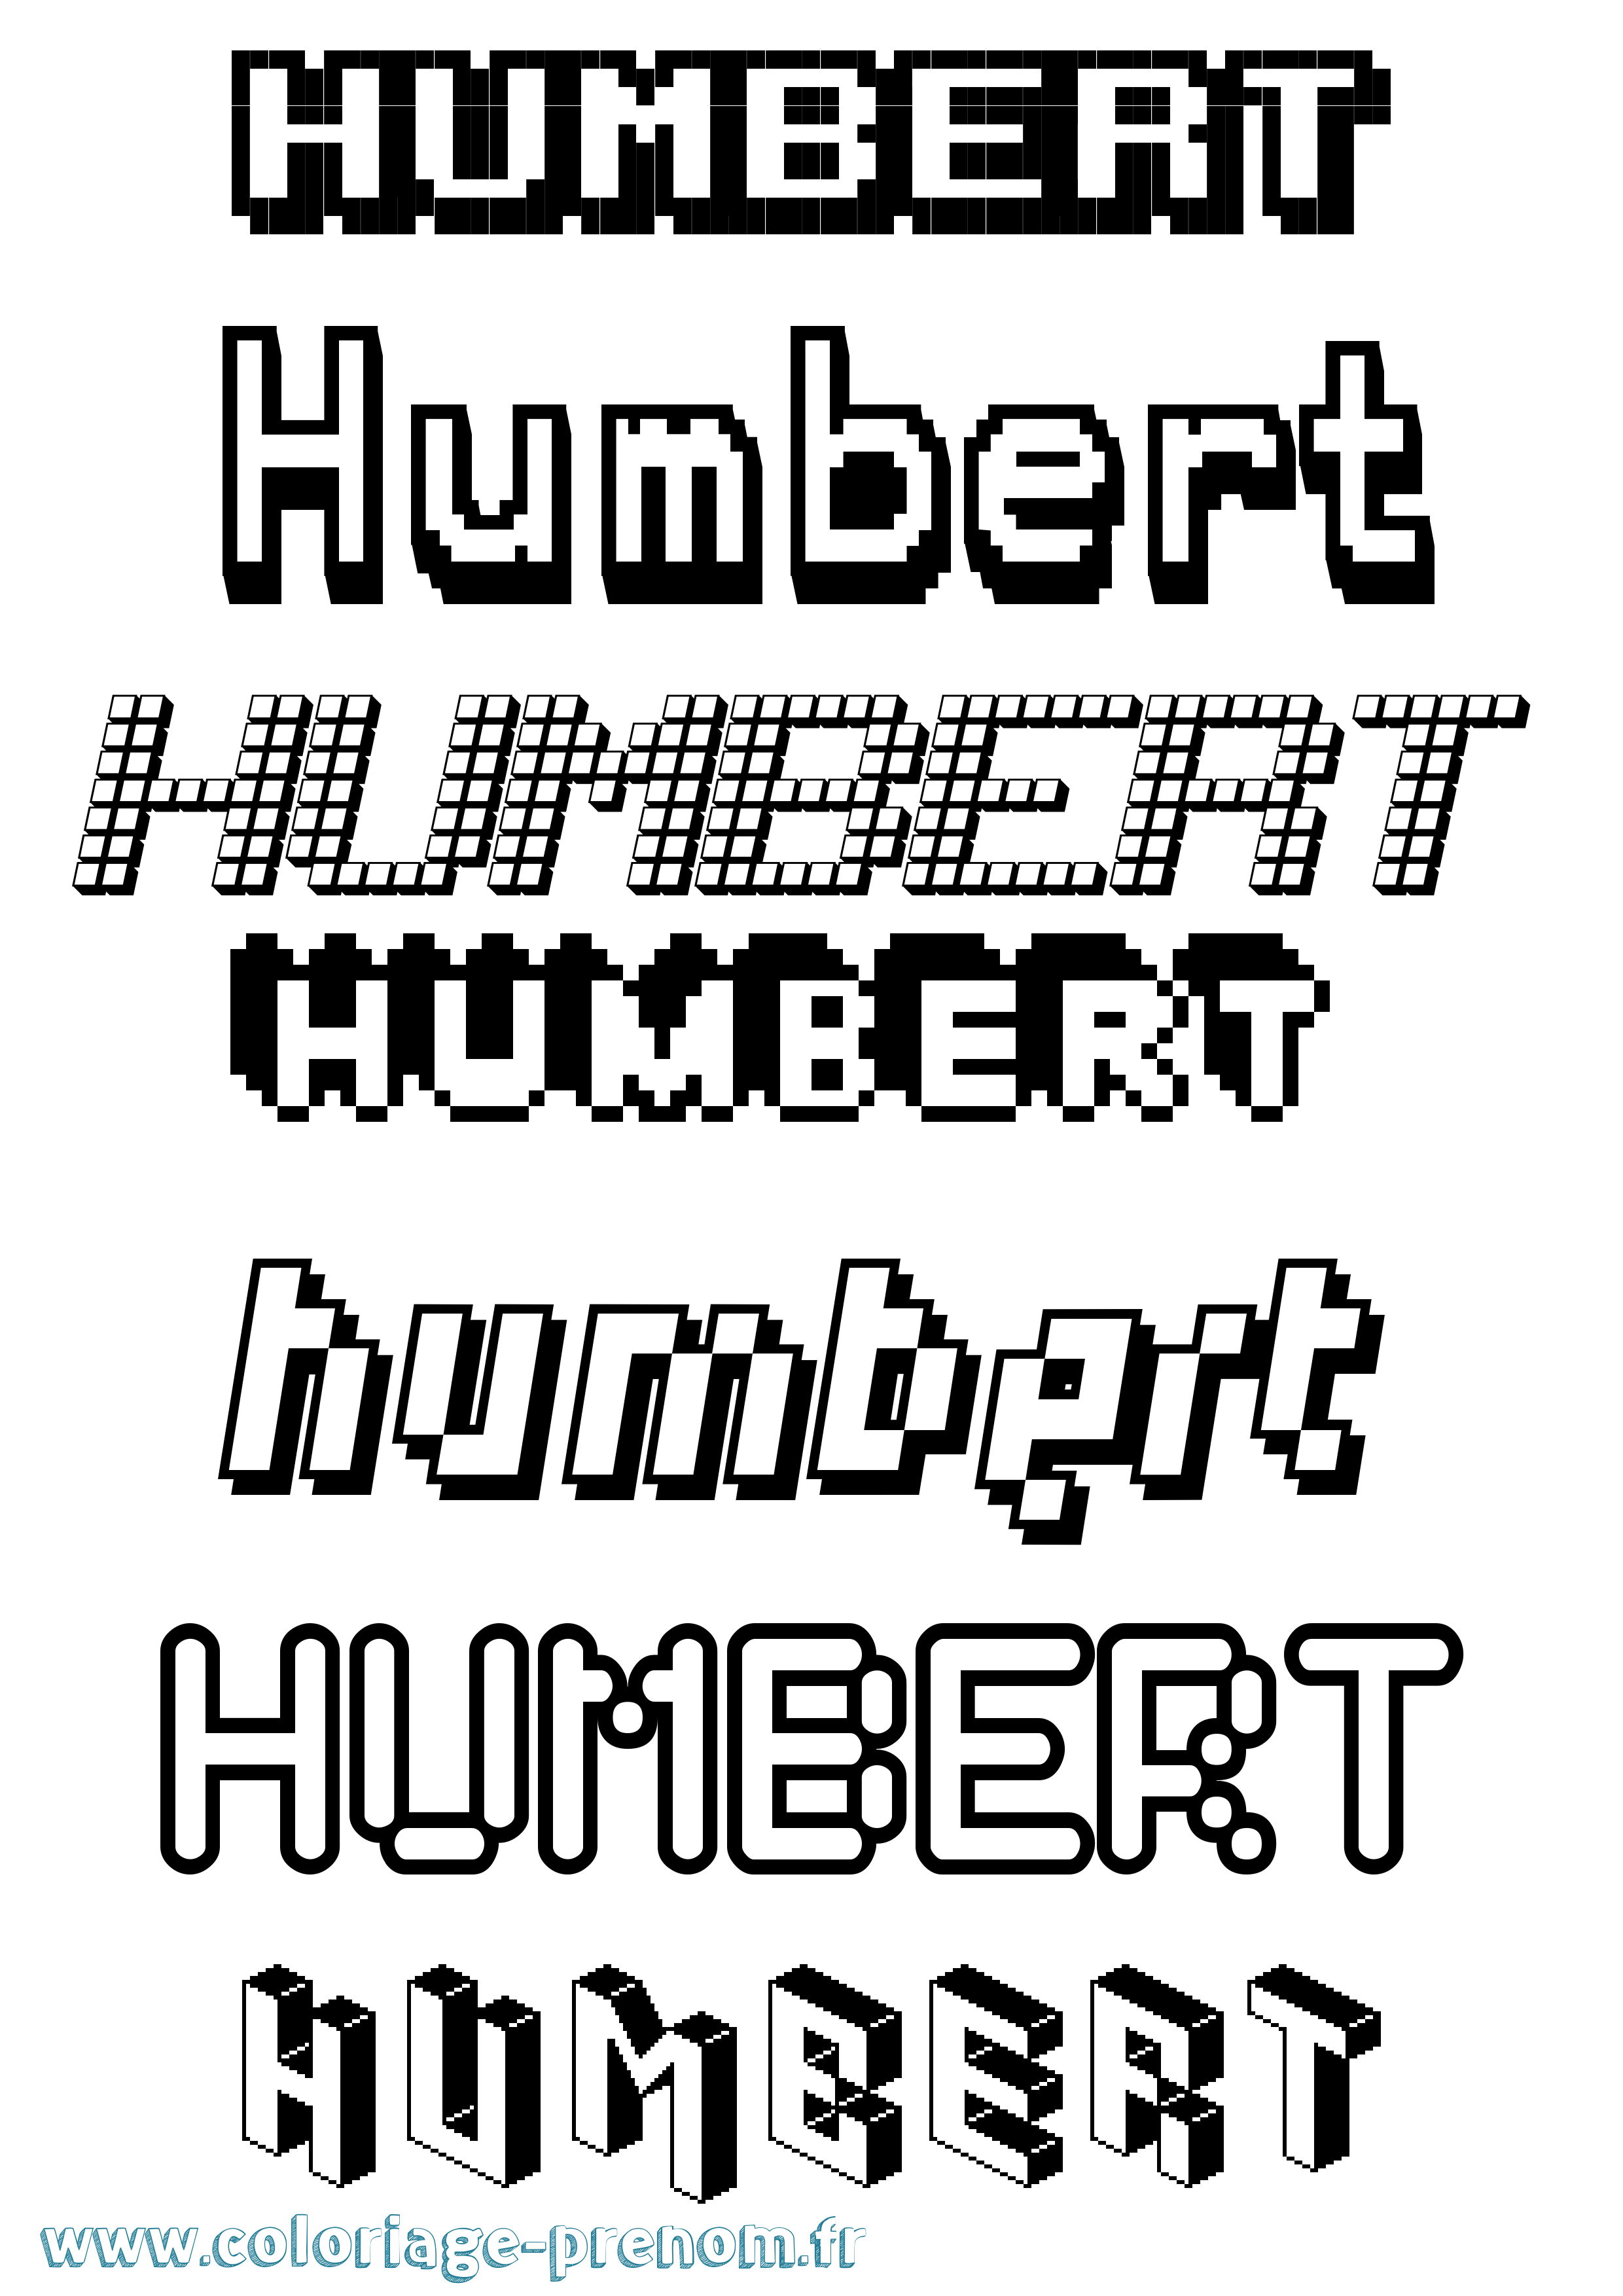 Coloriage prénom Humbert Pixel